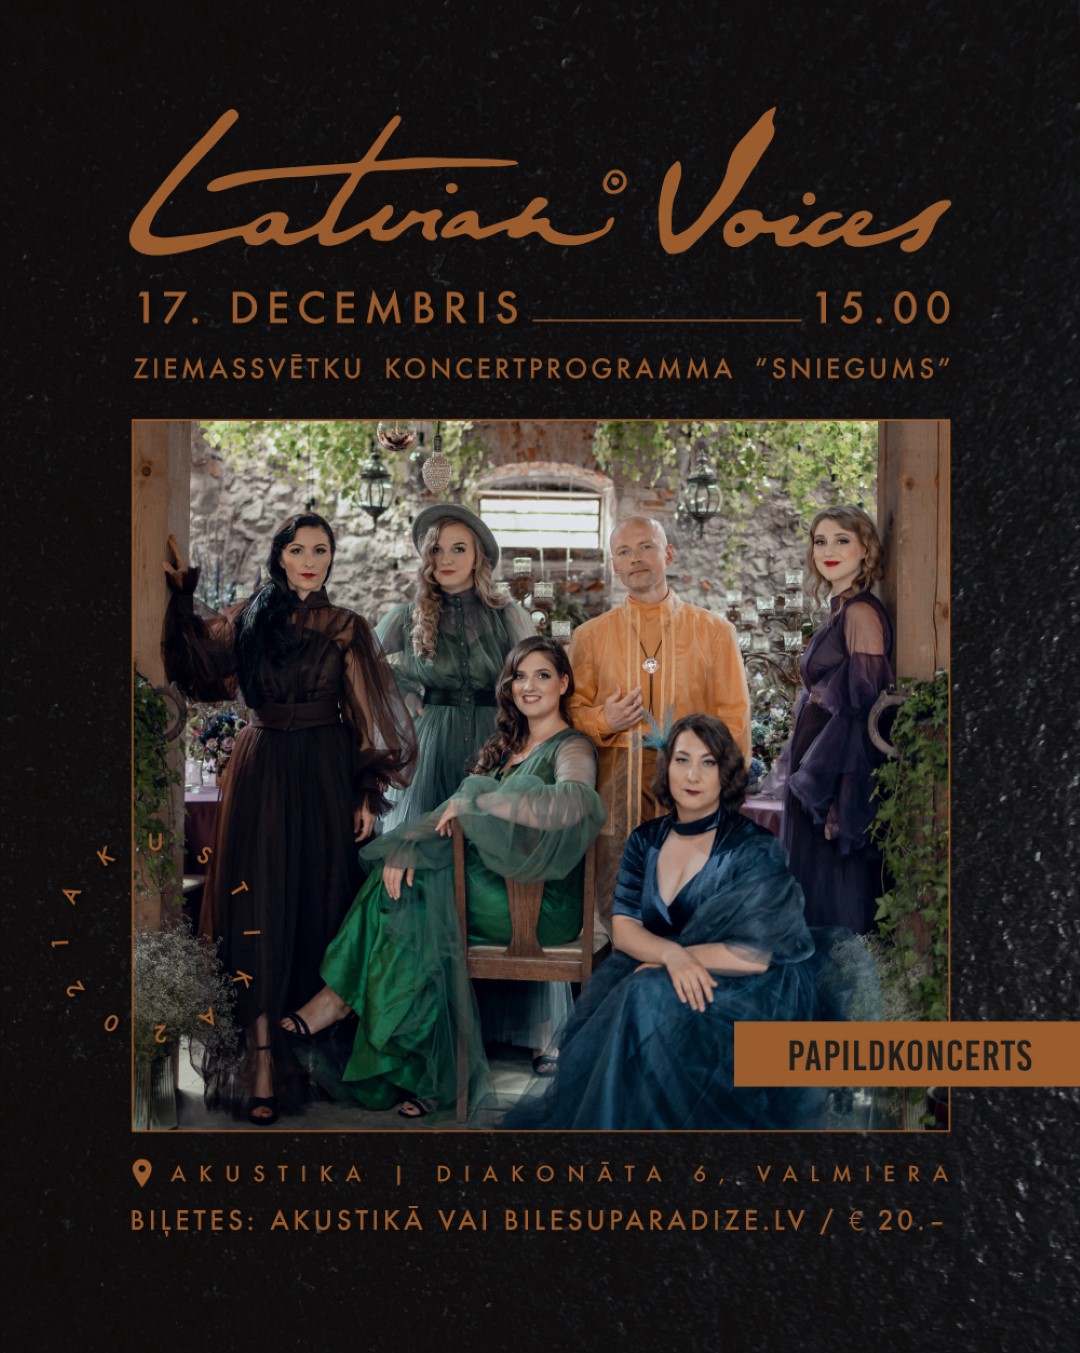 Latvian voices ziemassvētku koncerta afiša